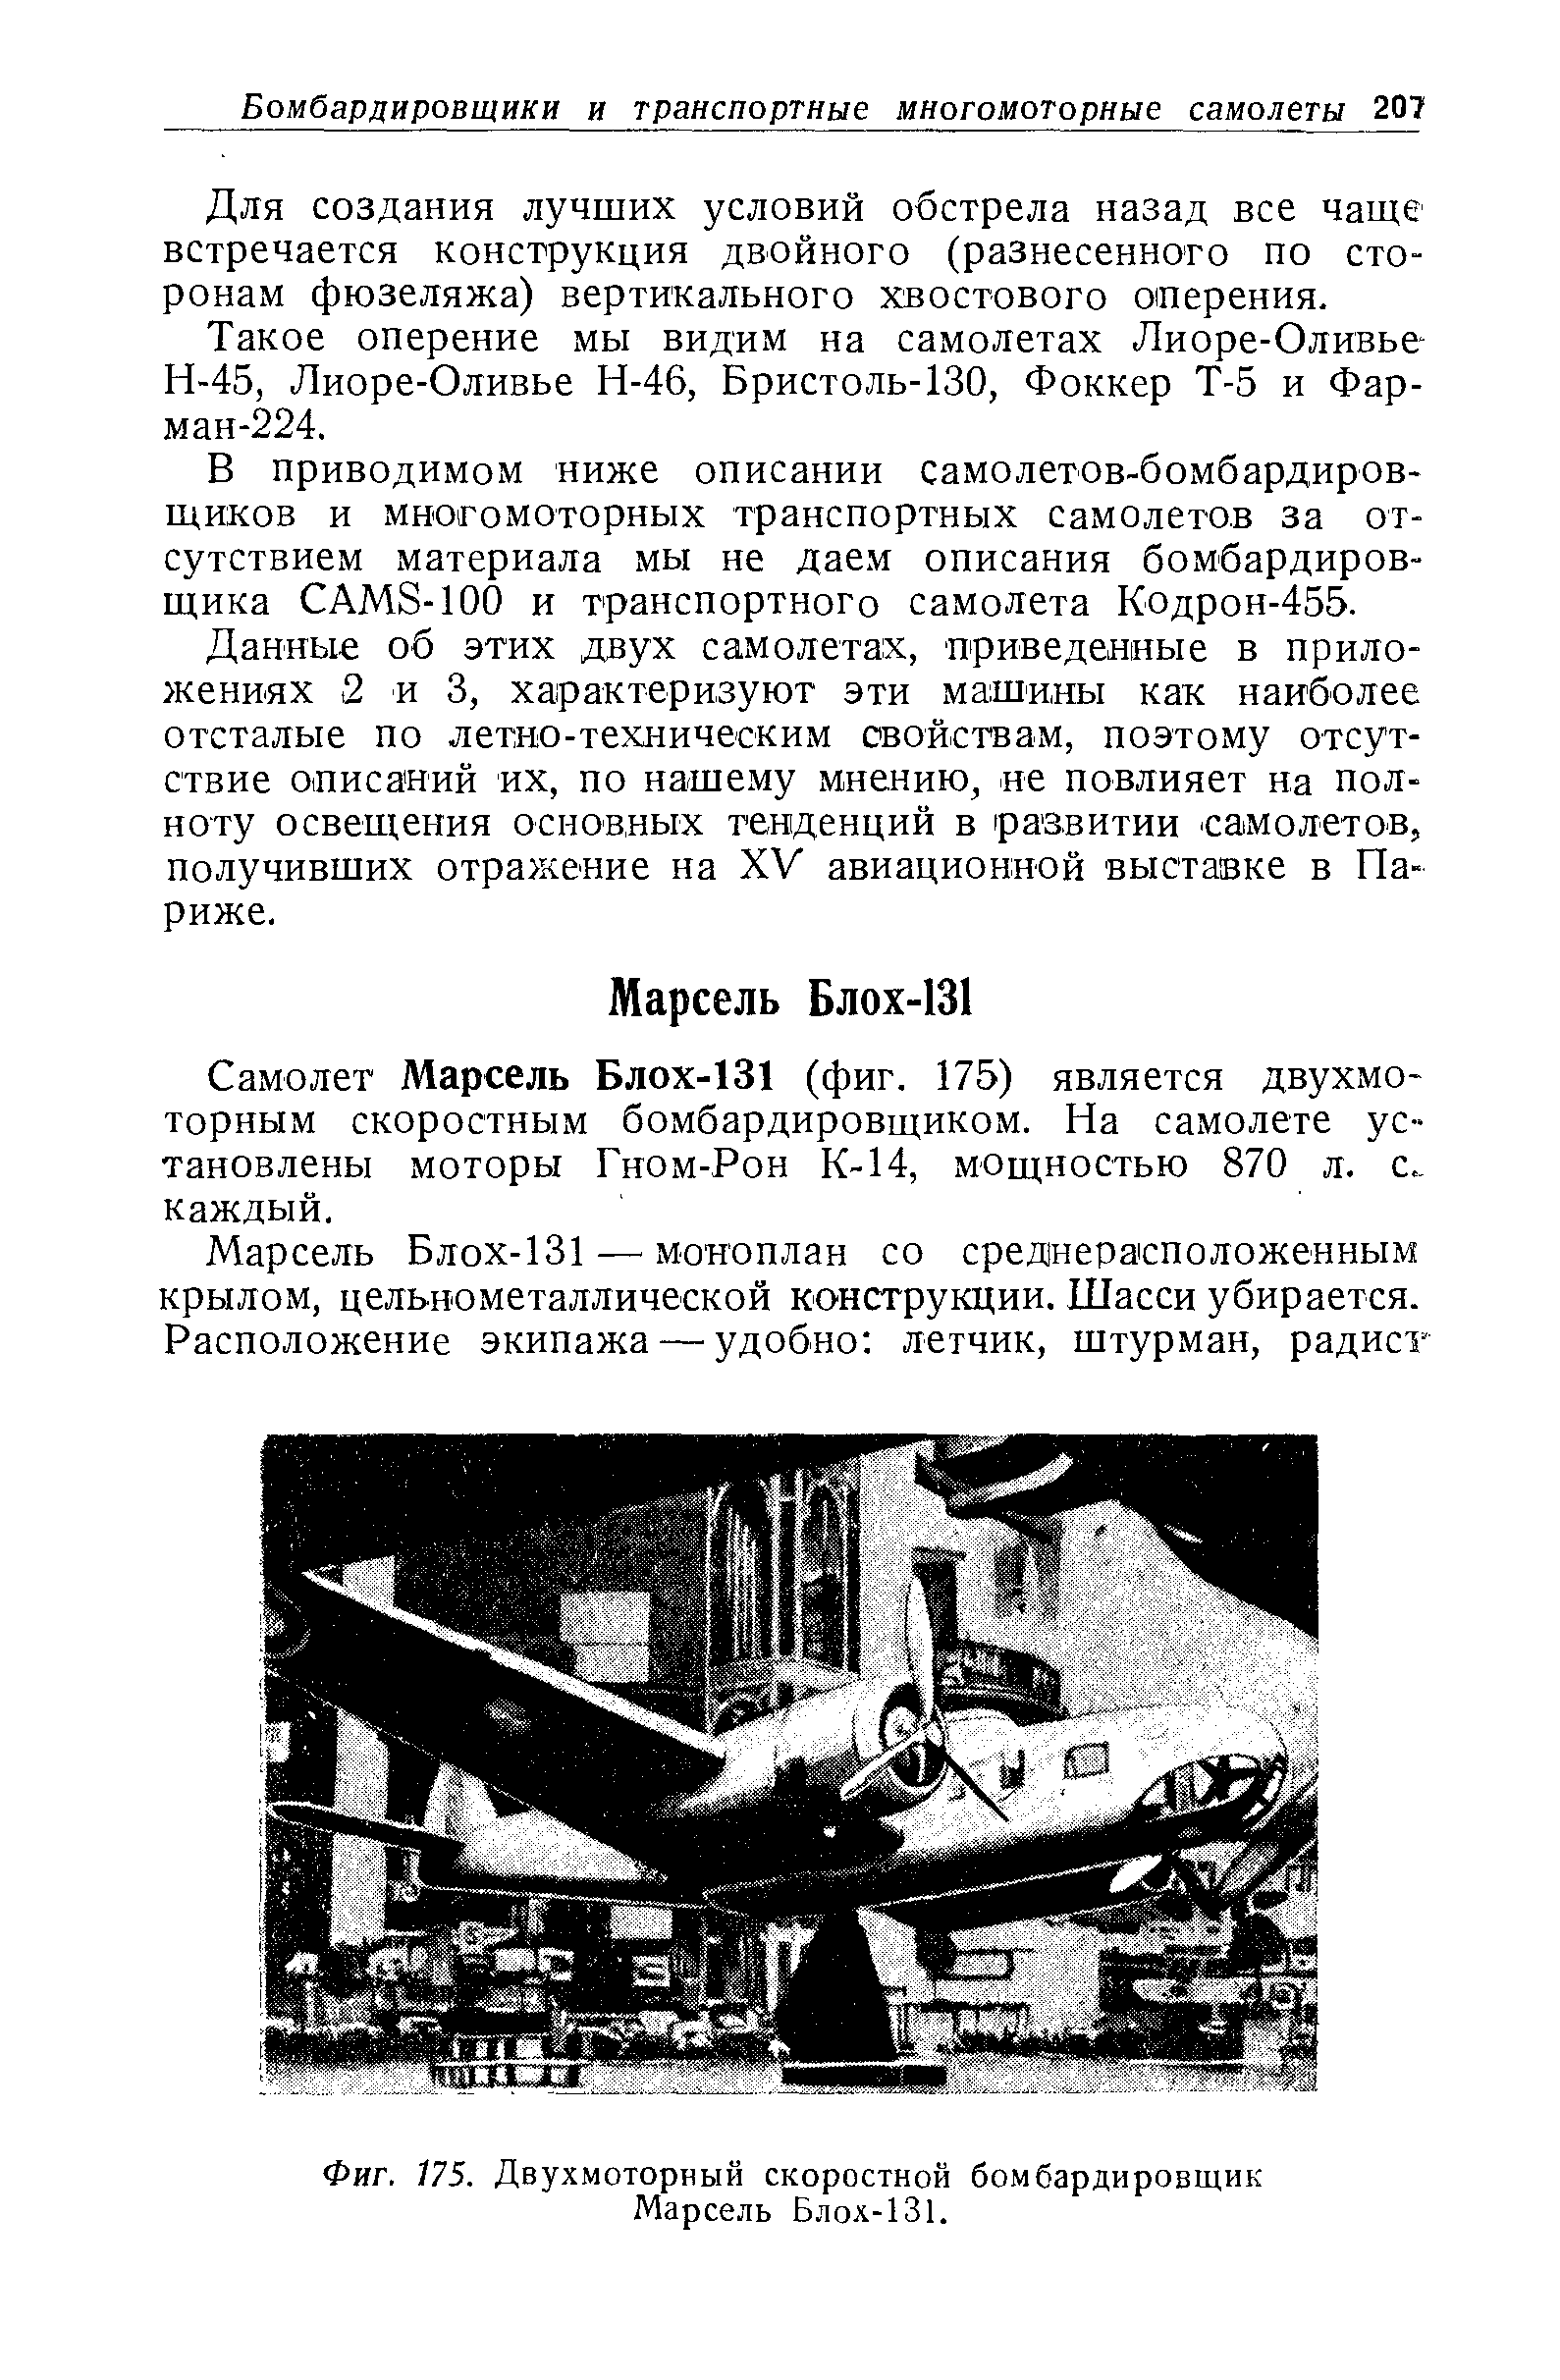 Фиг. 175. Двухмоторный скоростной бомбардировщик Марсель Блох-131.
